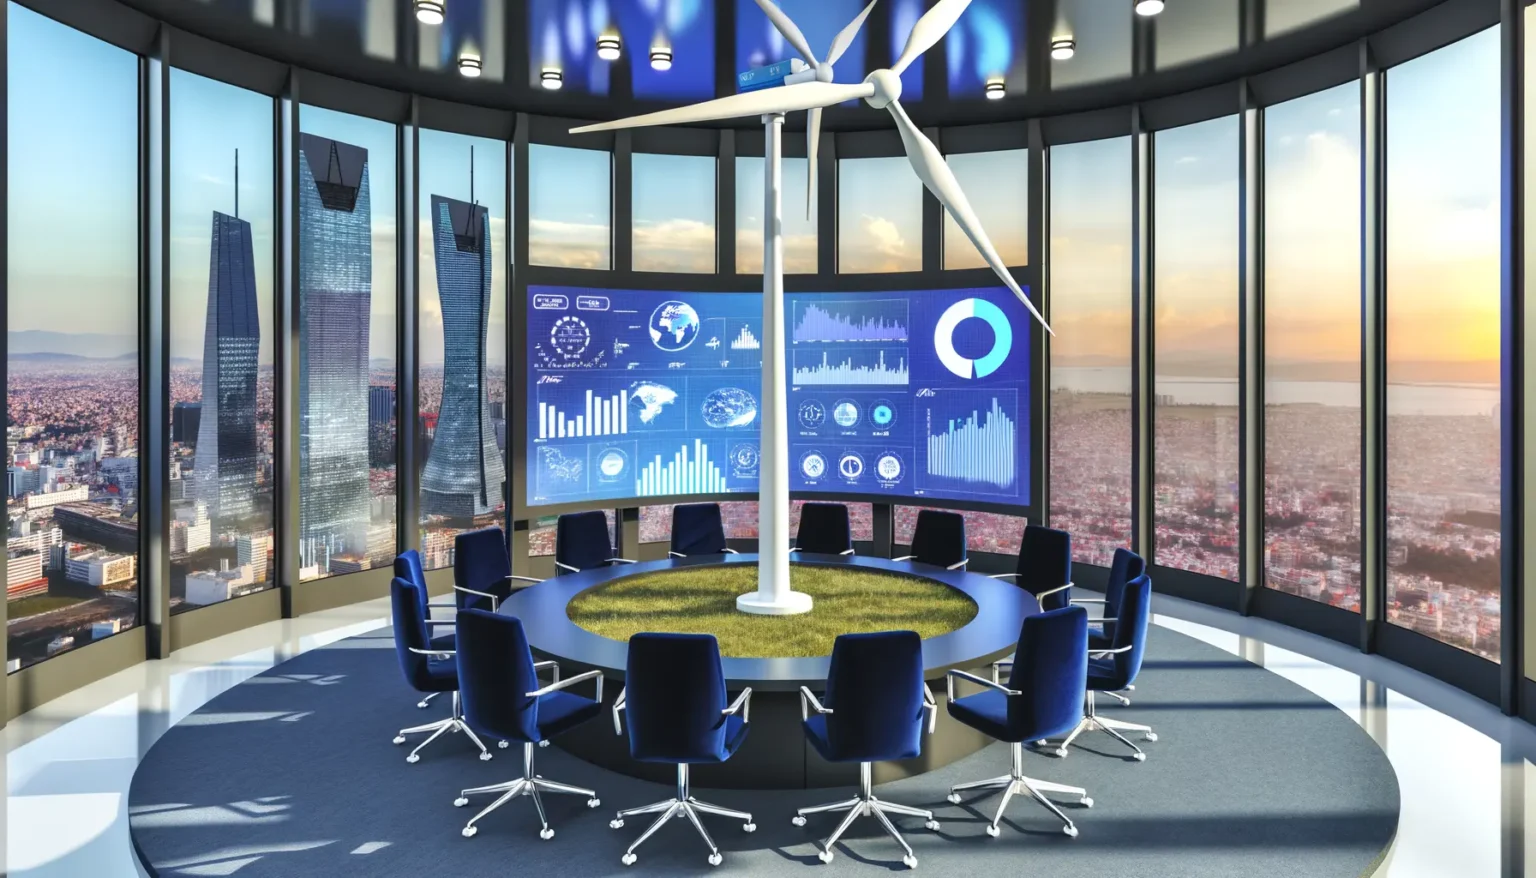 Modernes Bürokonferenzzimmer mit großem, rundem Tisch und blauen Stühlen, umgeben von Panoramafenstern, die einen Ausblick auf eine städtische Skyline bieten. Im Raum befindet sich eine Windturbine, und an der Wand sind interaktive Bildschirme mit verschiedenen Wirtschafts- und Finanzdiagrammen zu sehen. Das Ambiente wirkt zukunftsorientiert und technologisch fortschrittlich.